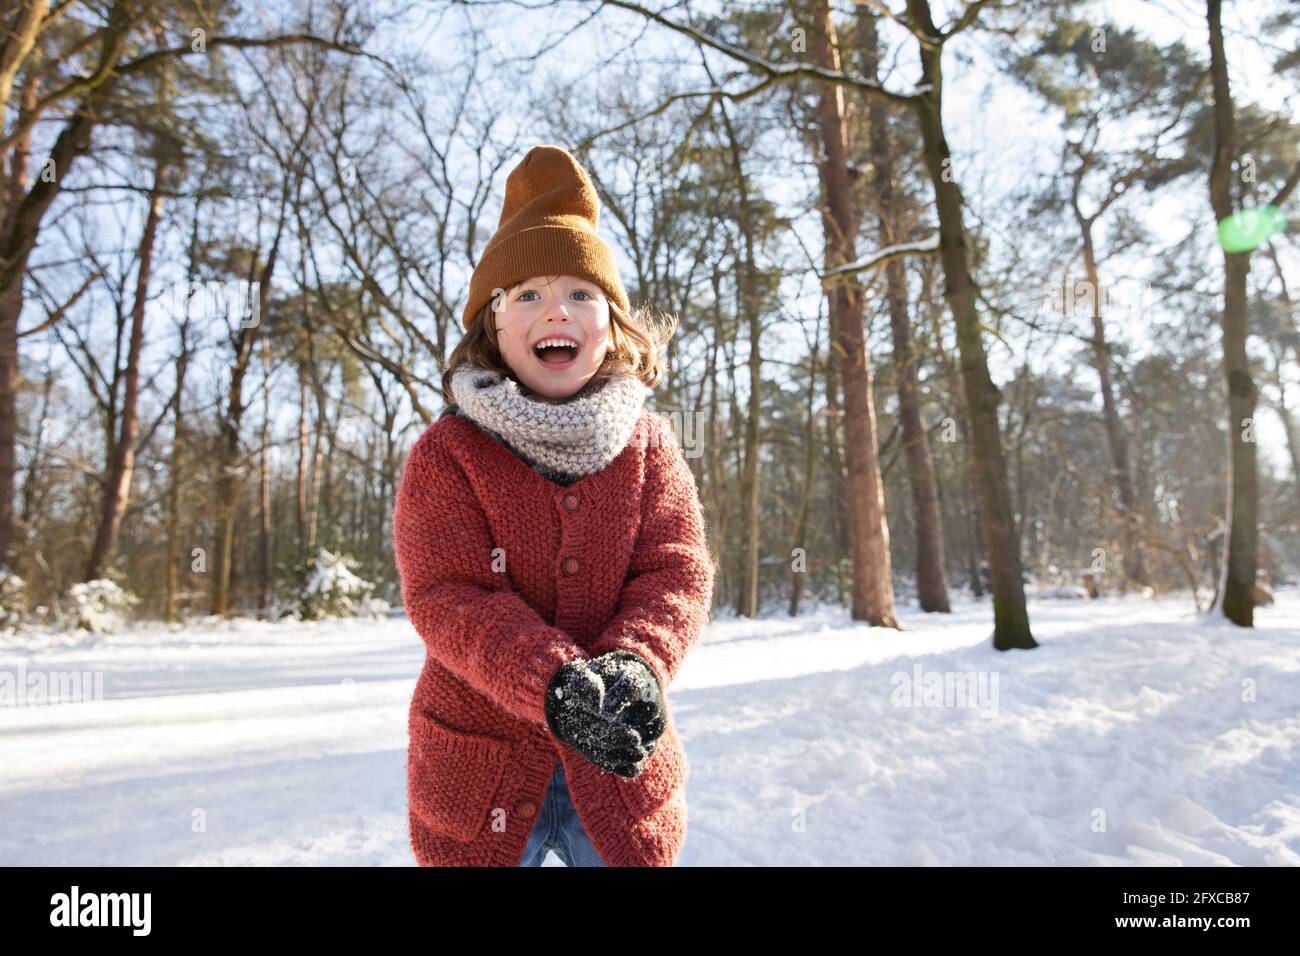 Curieux garçon dans des vêtements chauds jouant avec la neige pendant l'hiver Banque D'Images